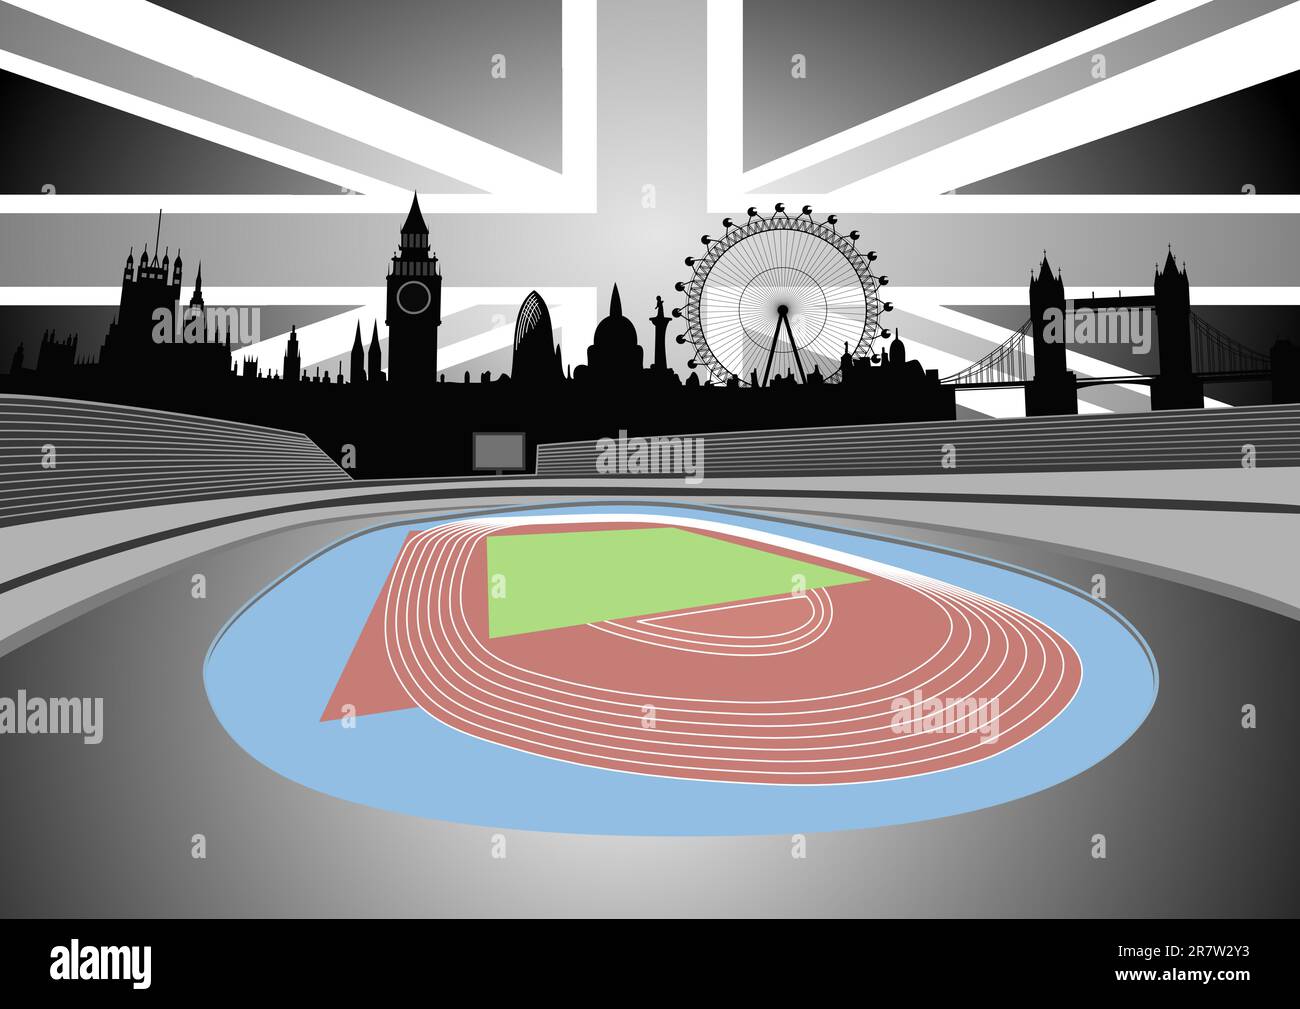 Ilustración del estadio con el horizonte de Londres - vector. Este archivo es vectorial, se puede escalar a cualquier tamaño sin pérdida de calidad. Ilustración del Vector